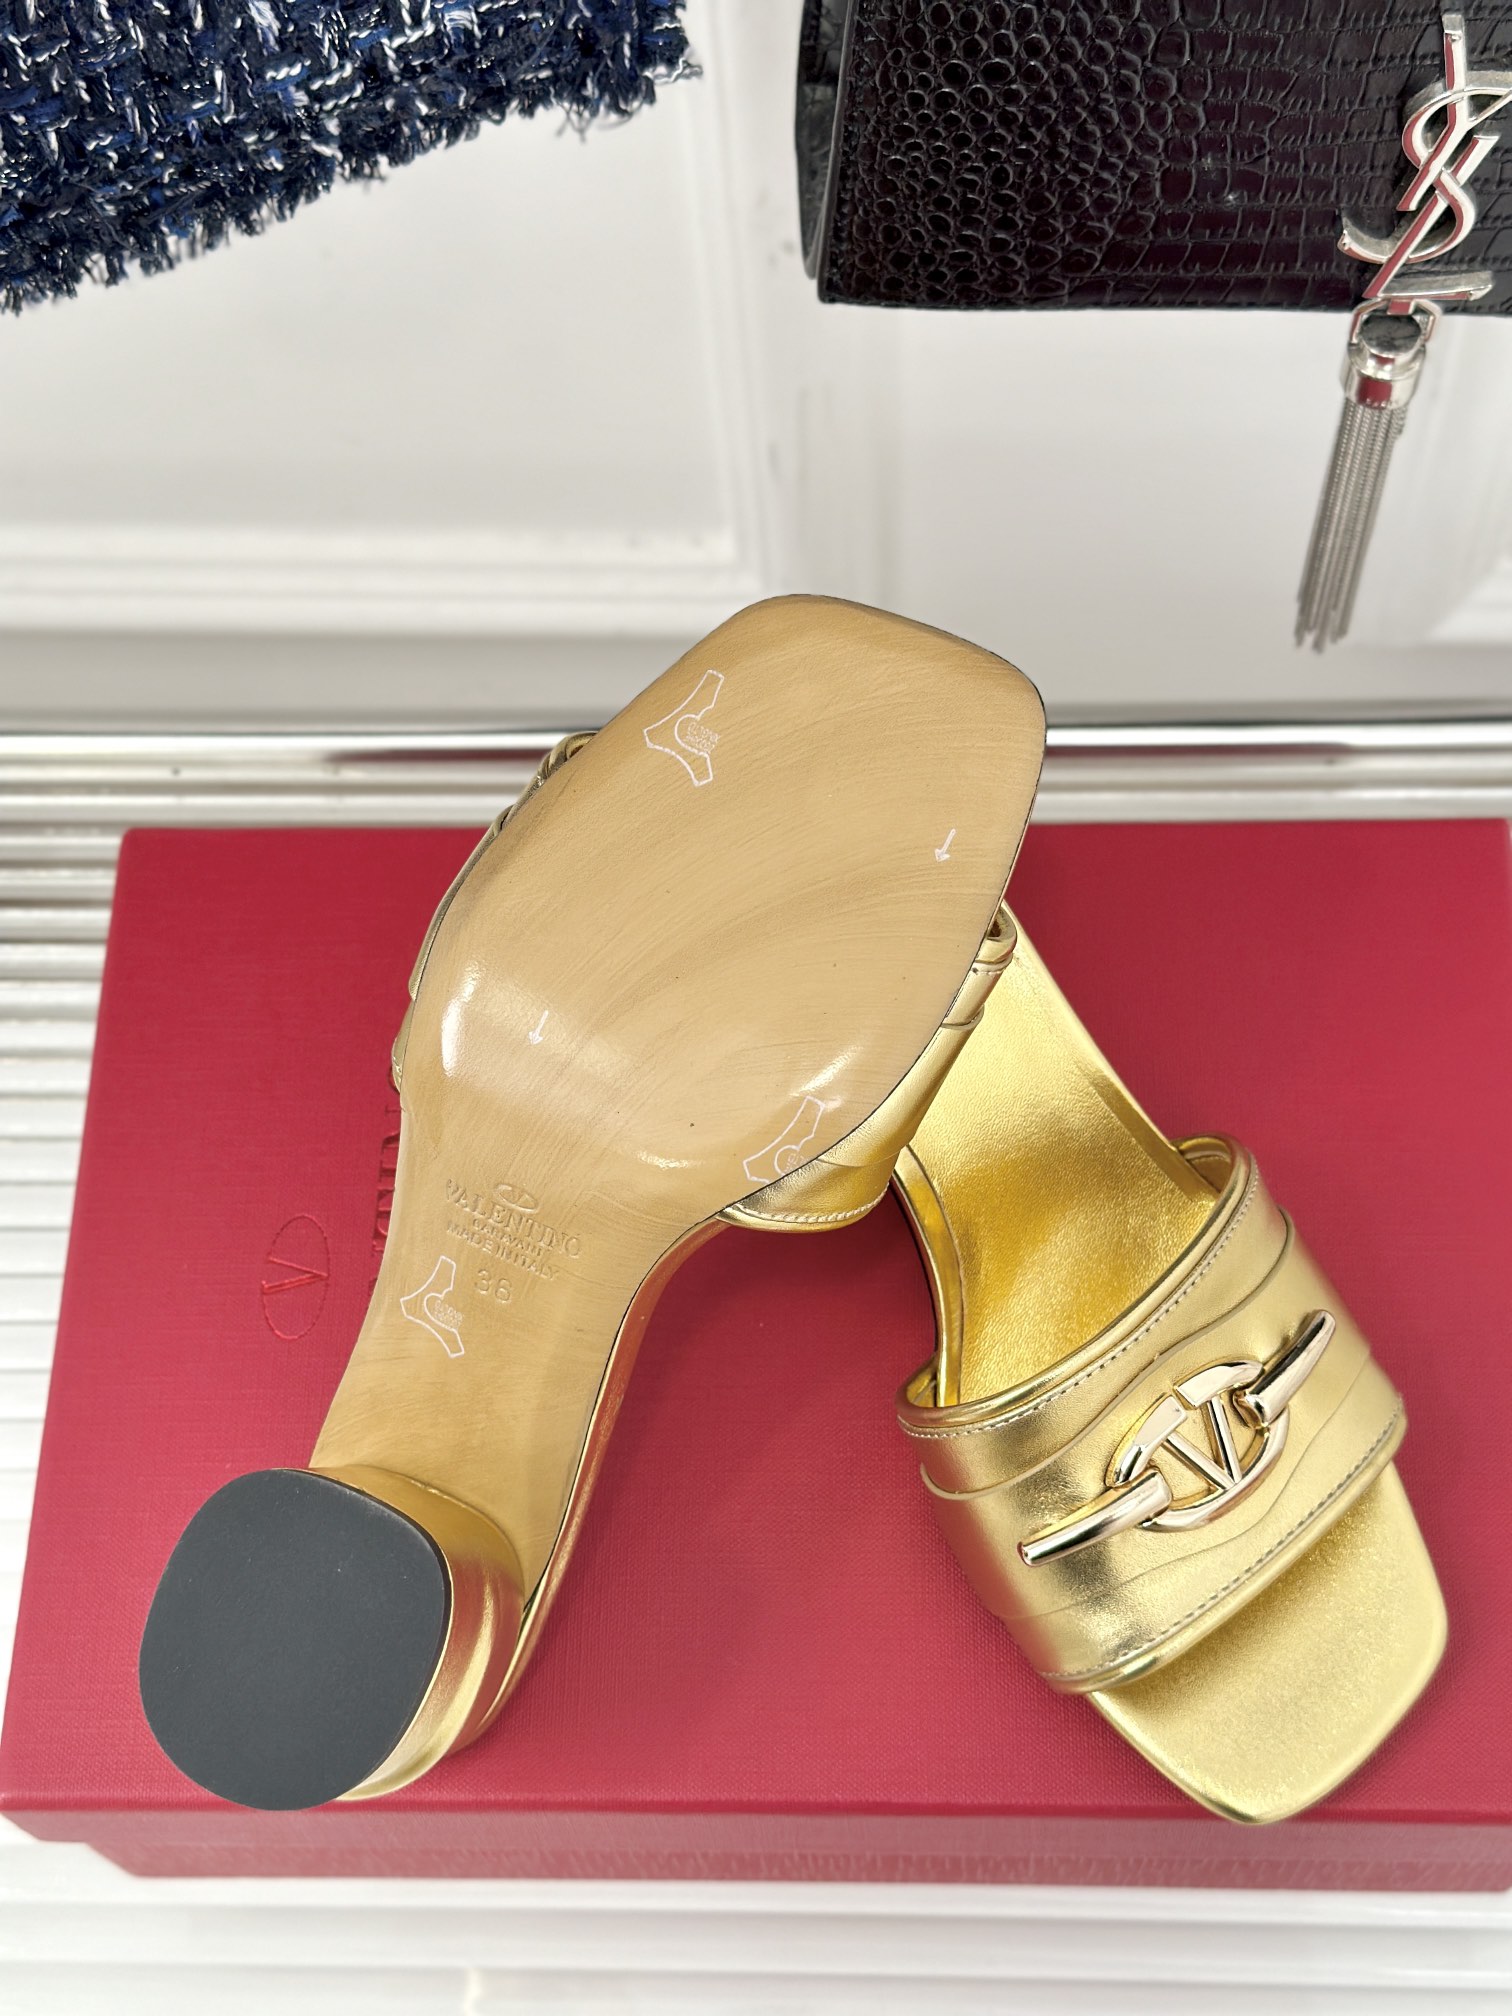 Valentin华伦天伦24s春夏新品粗跟凉拖鞋系列经典的大V扣元素设计彰显了品牌独有的风格奢华时尚极有